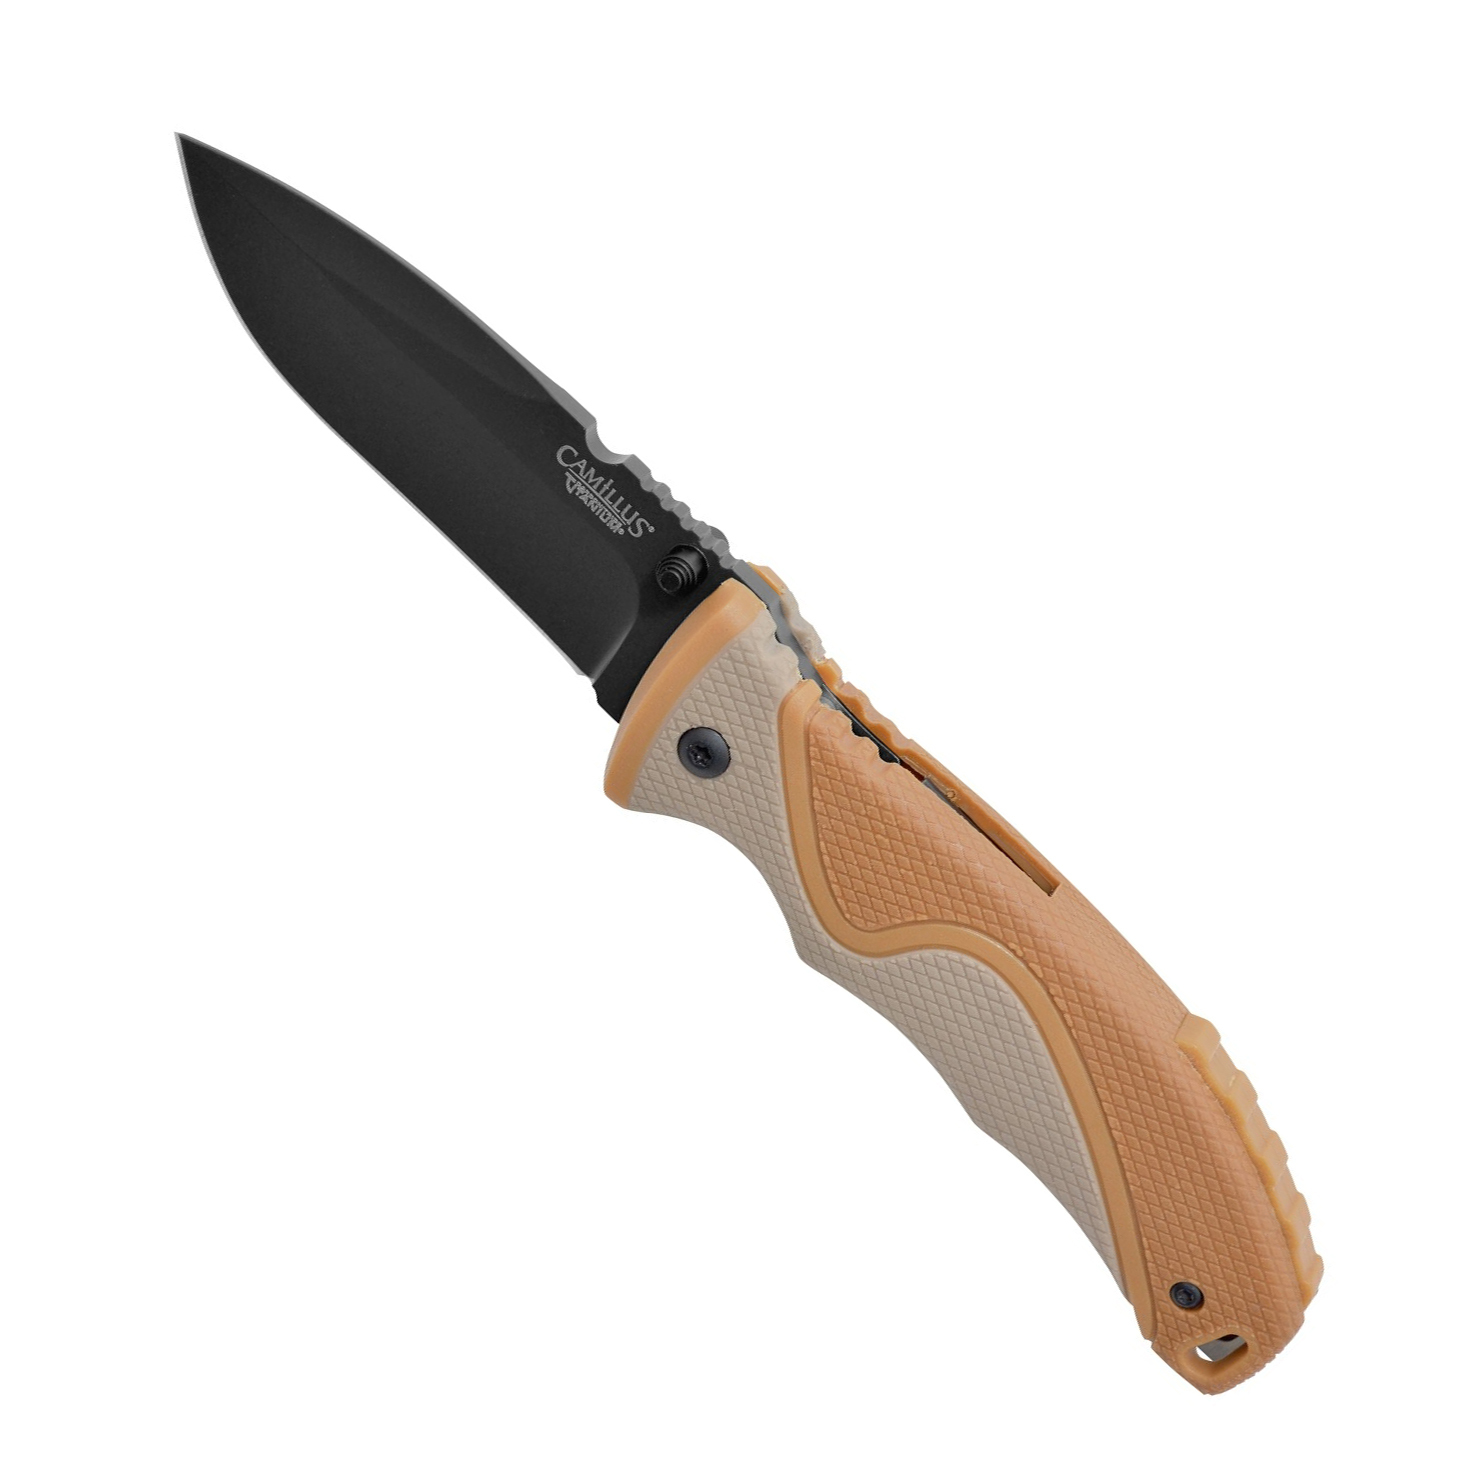 Нож складной Camillus Les Stroud San Bushmen, сталь 440А, рукоять Zytel®, коричневый от Ножиков